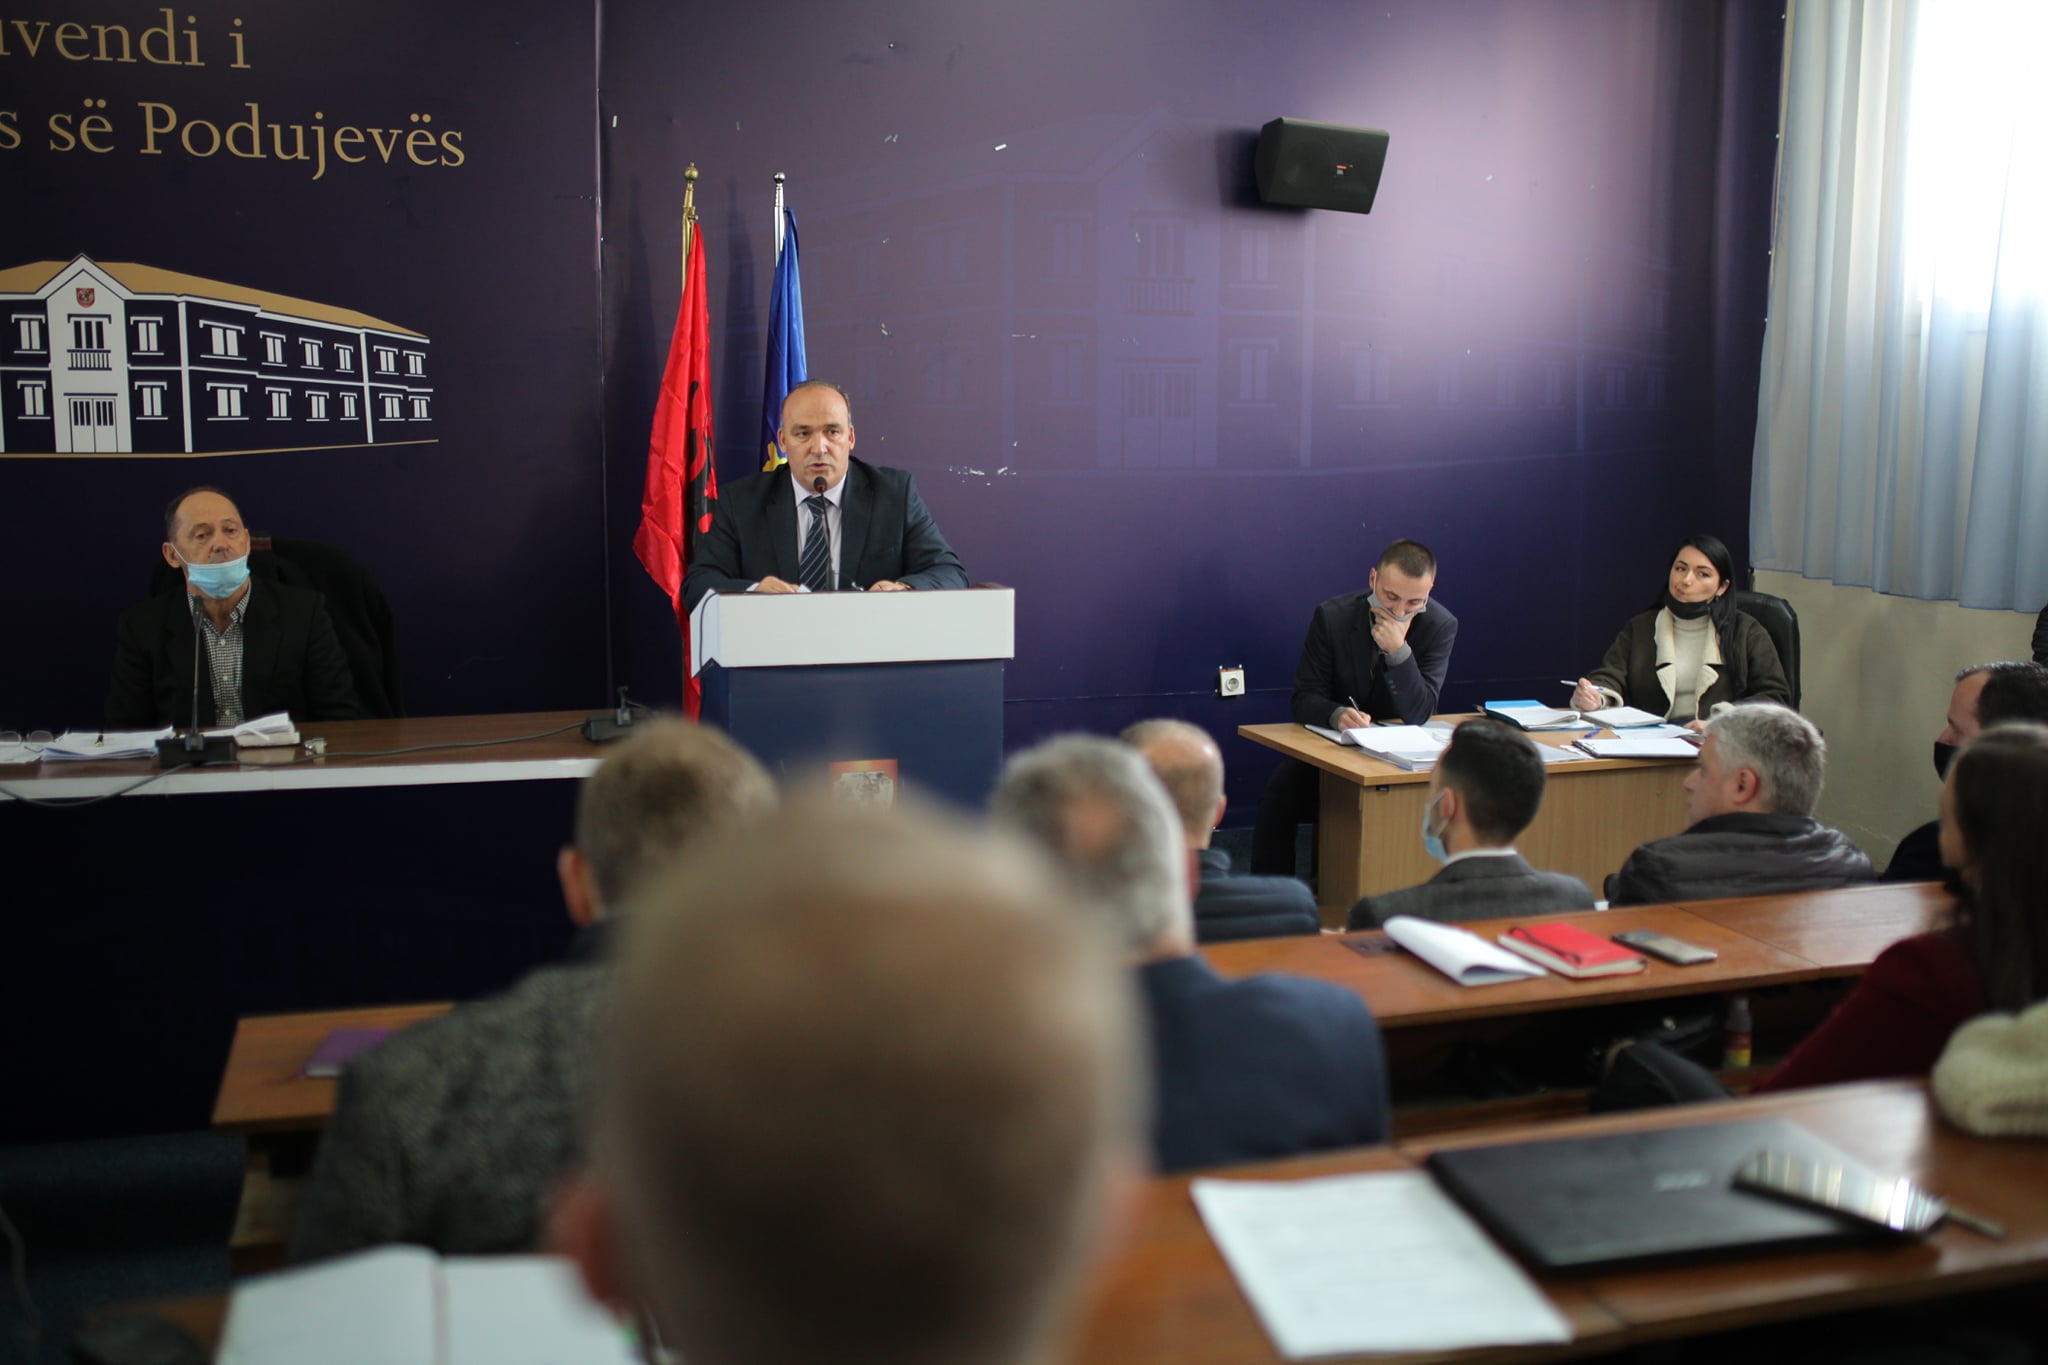  PODUJEVË: LDK-ja e PDK-ja ia pamundësojnë qeverisjes së re të Vetëvendosjes në Podujevë miratimin e vendimeve